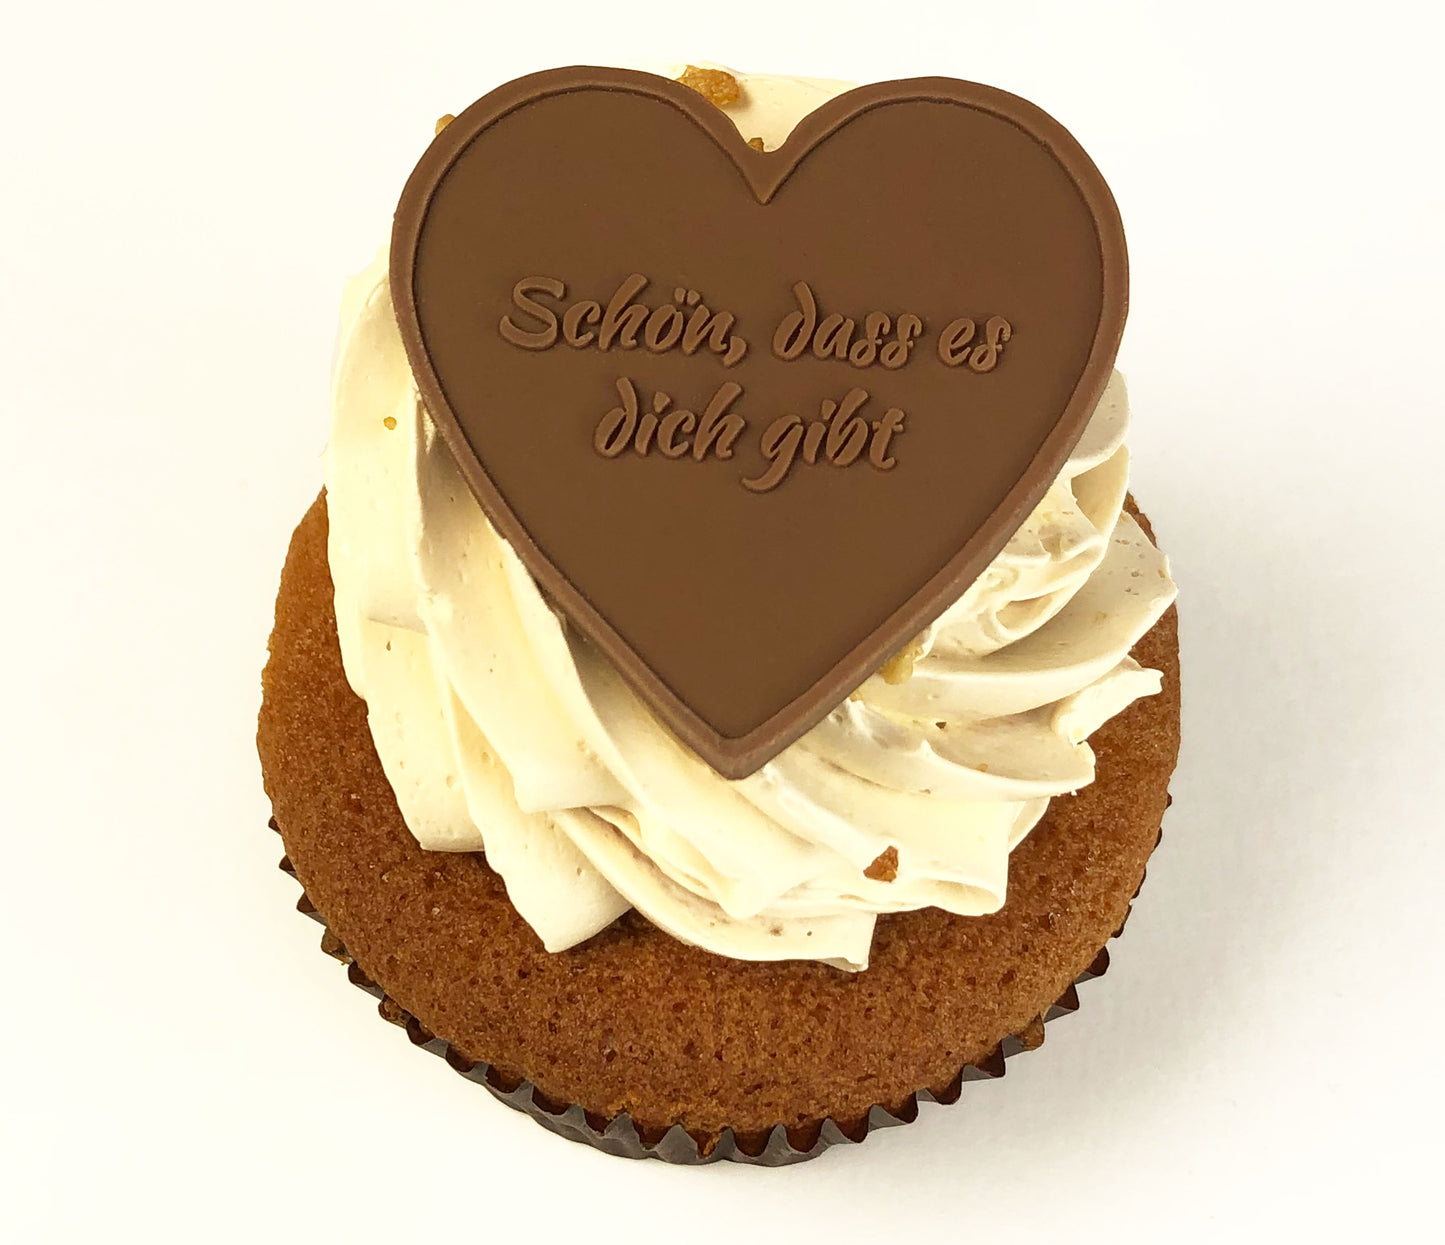 Schoko-Herzen ‚Für dich‘ - 12 Schokoladenherzen mit geprägten Liebessprüchen - Ruby- Vollmilch-, und Weiße Schokolade